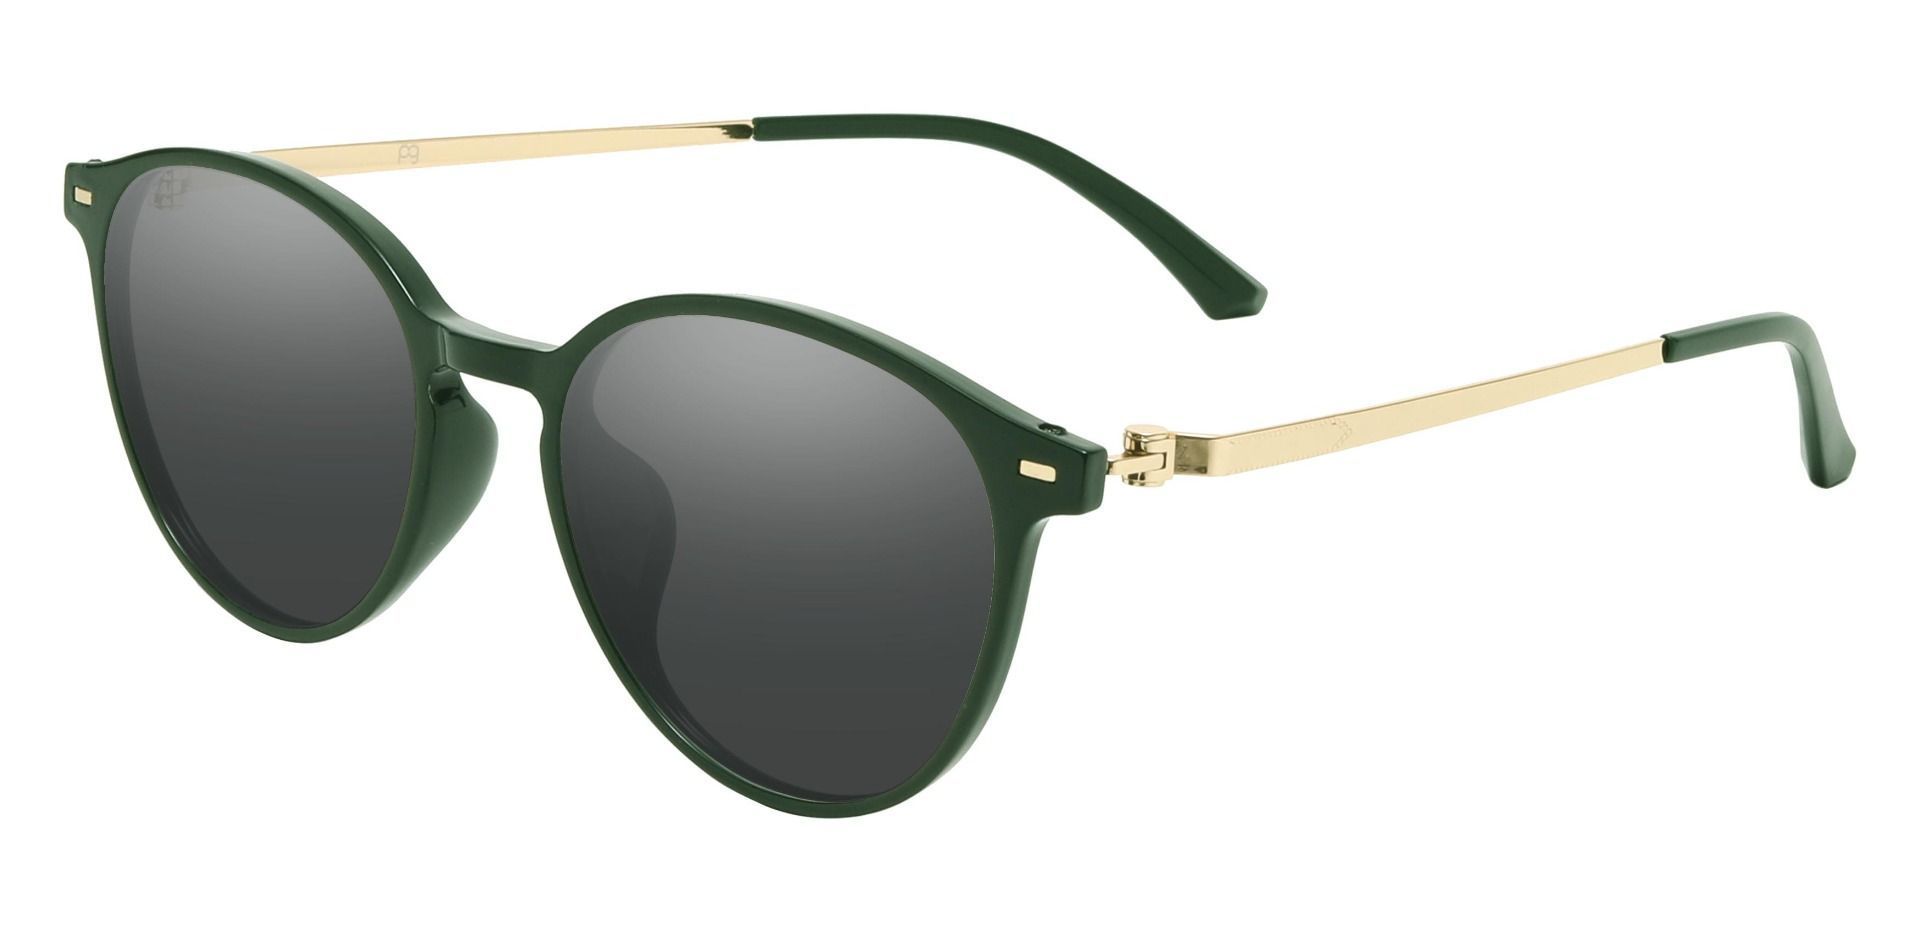 Springer Round Progressive Sunglasses - Green Frame With Gray Lenses